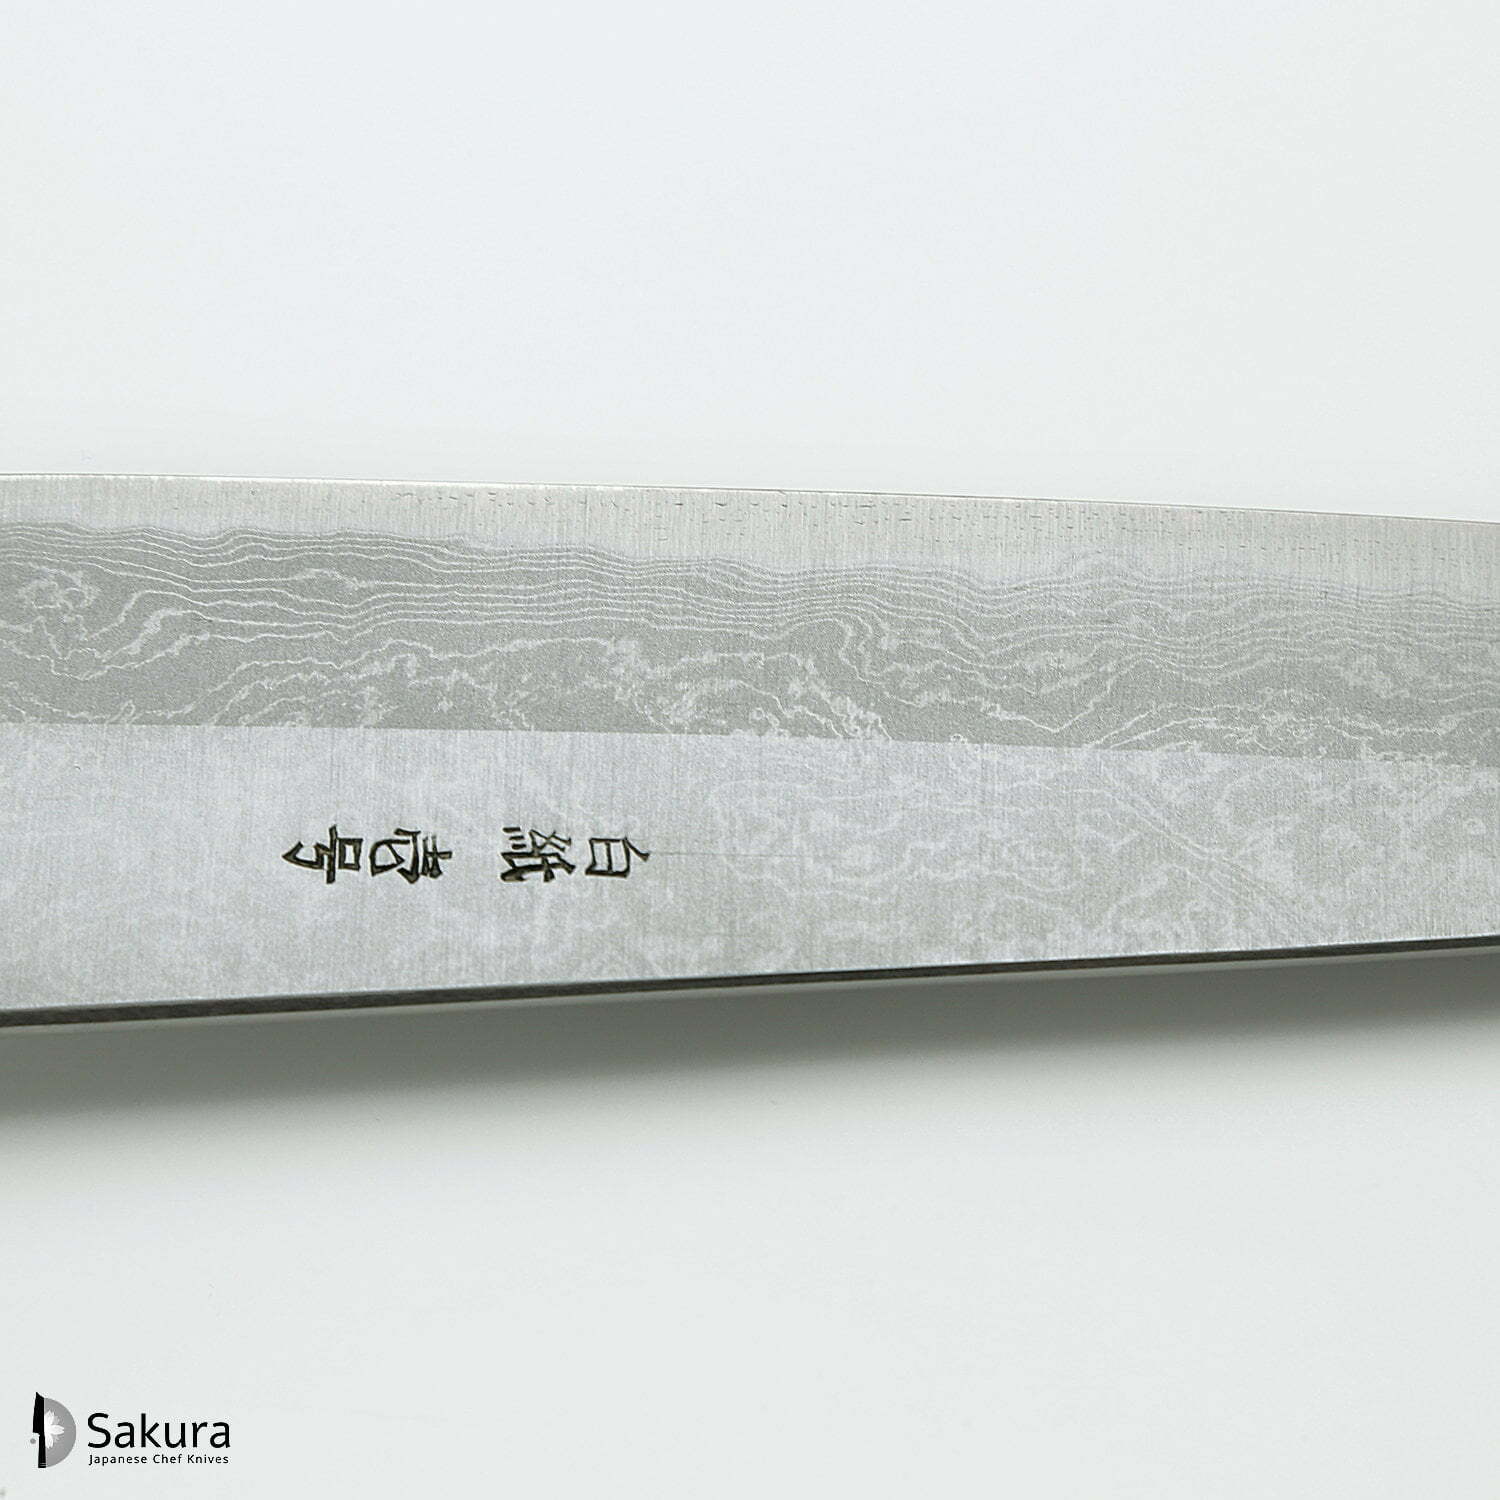 סכין שף רב-תכליתית גִּיוּטוֹ 210מ״מ מחושלת בעבודת יד 3 שכבות: פלדת פחמן יפנית מתקדמת מסוג Shirogami #1 עטופה פלדת דמשק אל-חלד גימור דמשק יושיקאזו טאנקה יפן